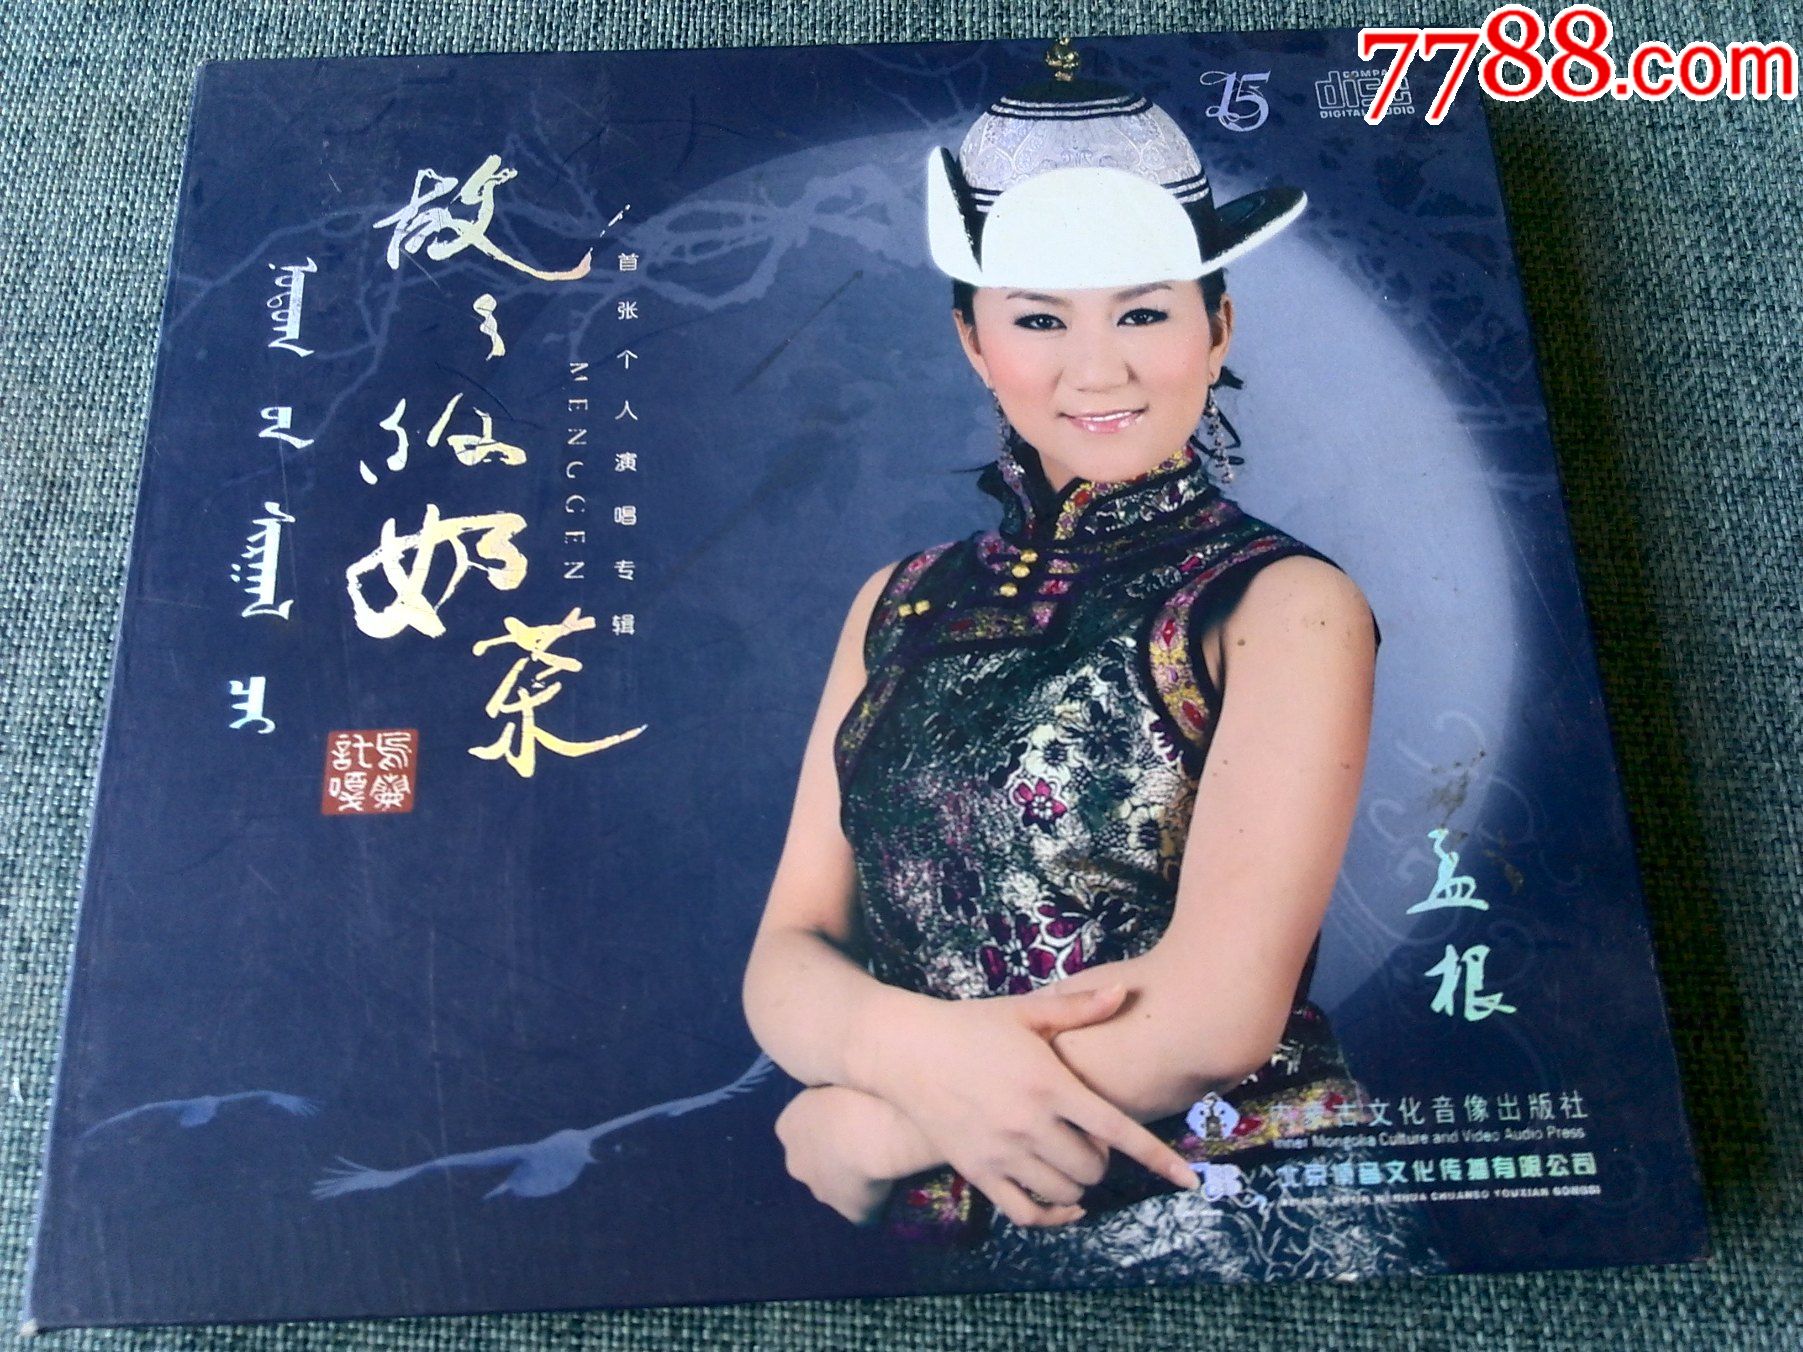 蒙古族女歌手孟根首张个人专辑故乡的奶茶